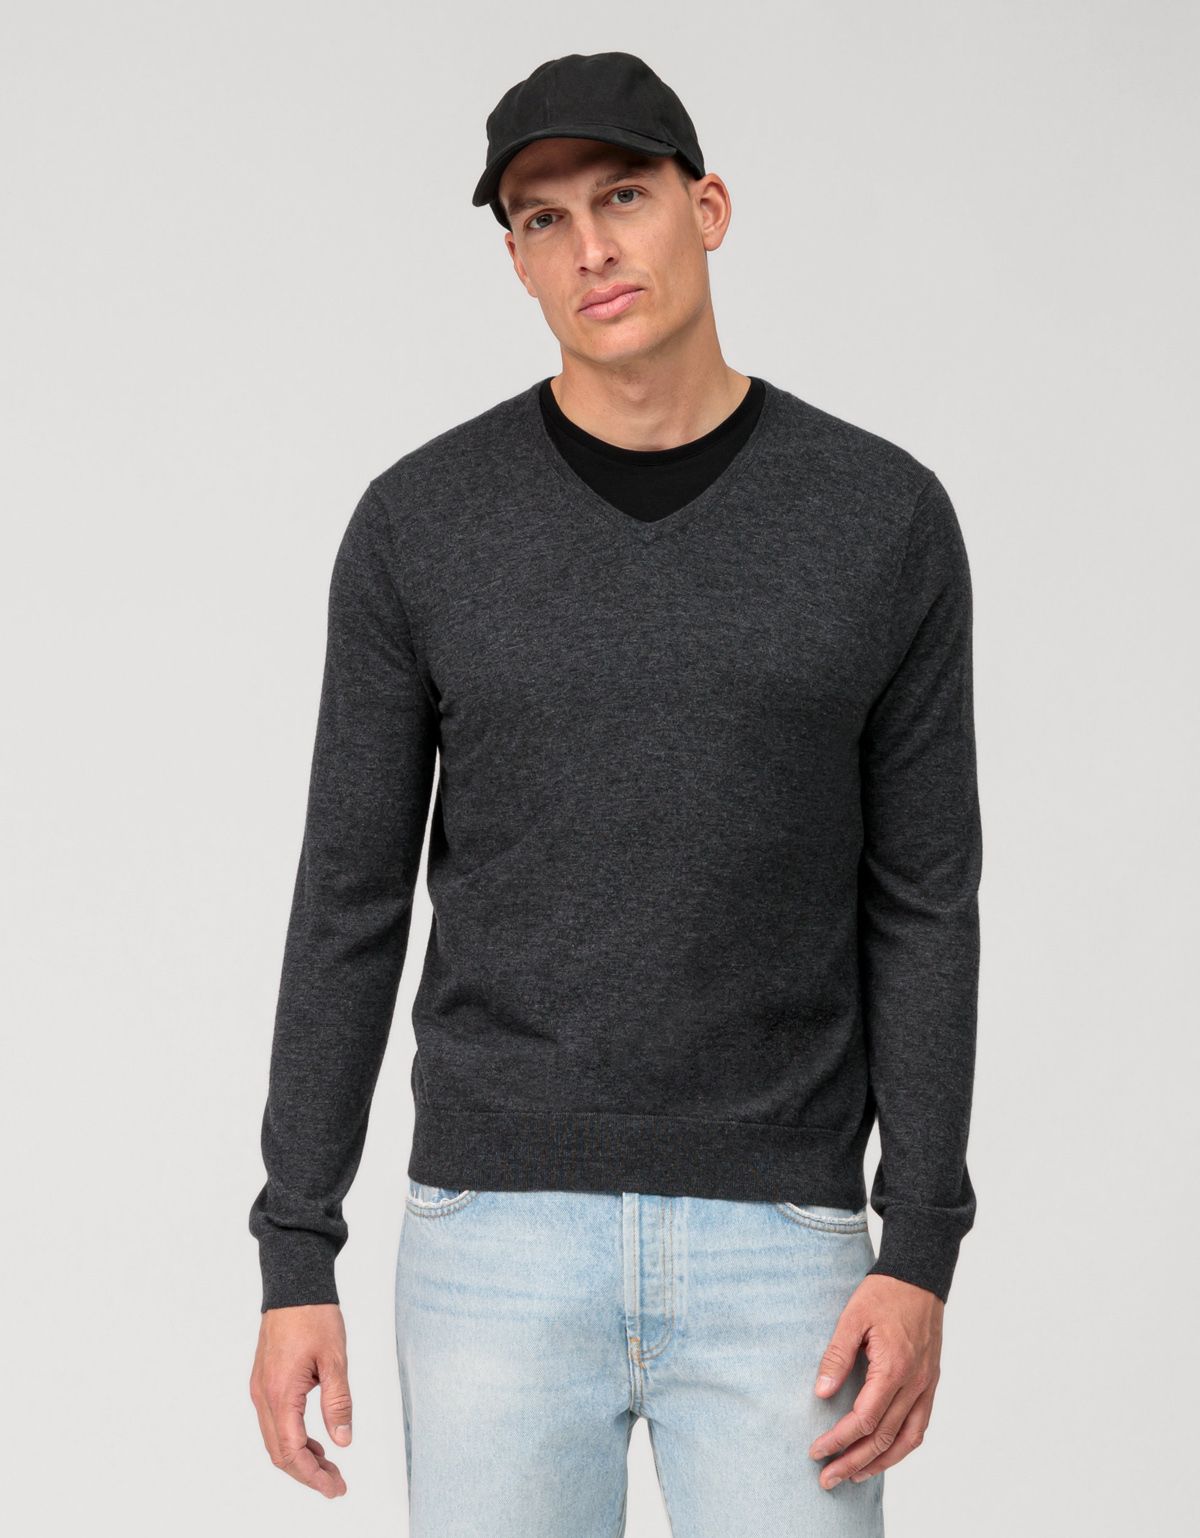 Пуловер серый мужской OLYMP, body fit[СЕРЫЙ]